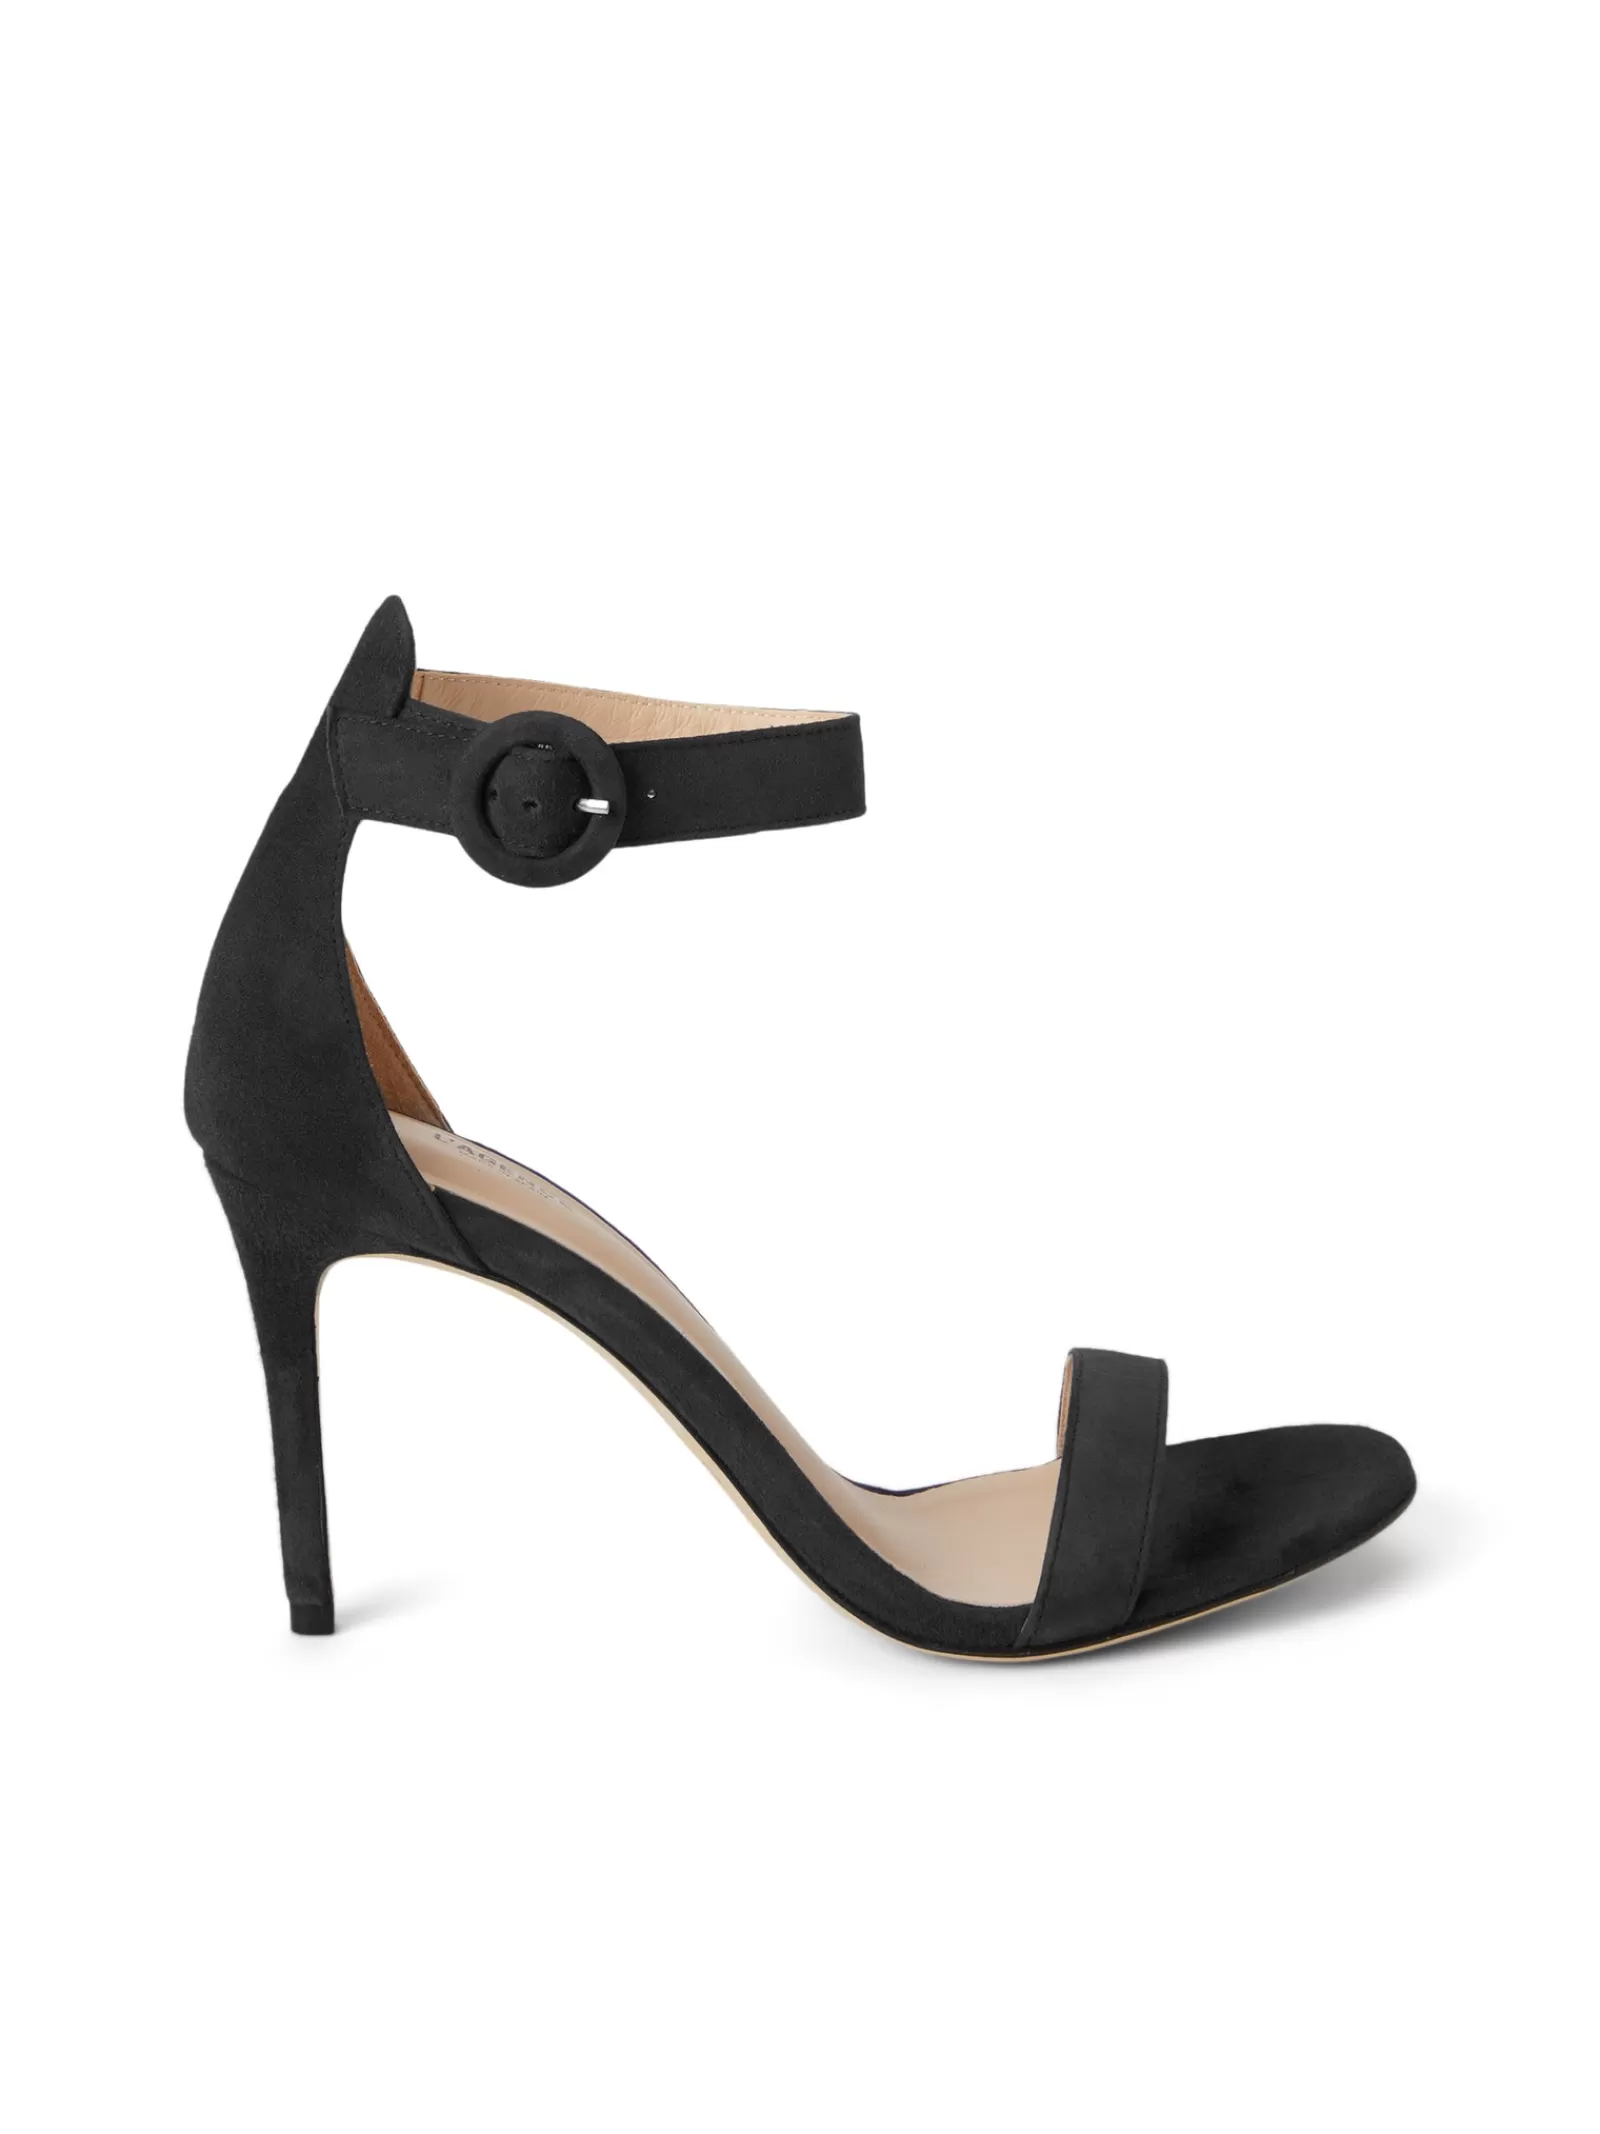 L'AGENCE Gisele Sandal< Sandals & Wedges